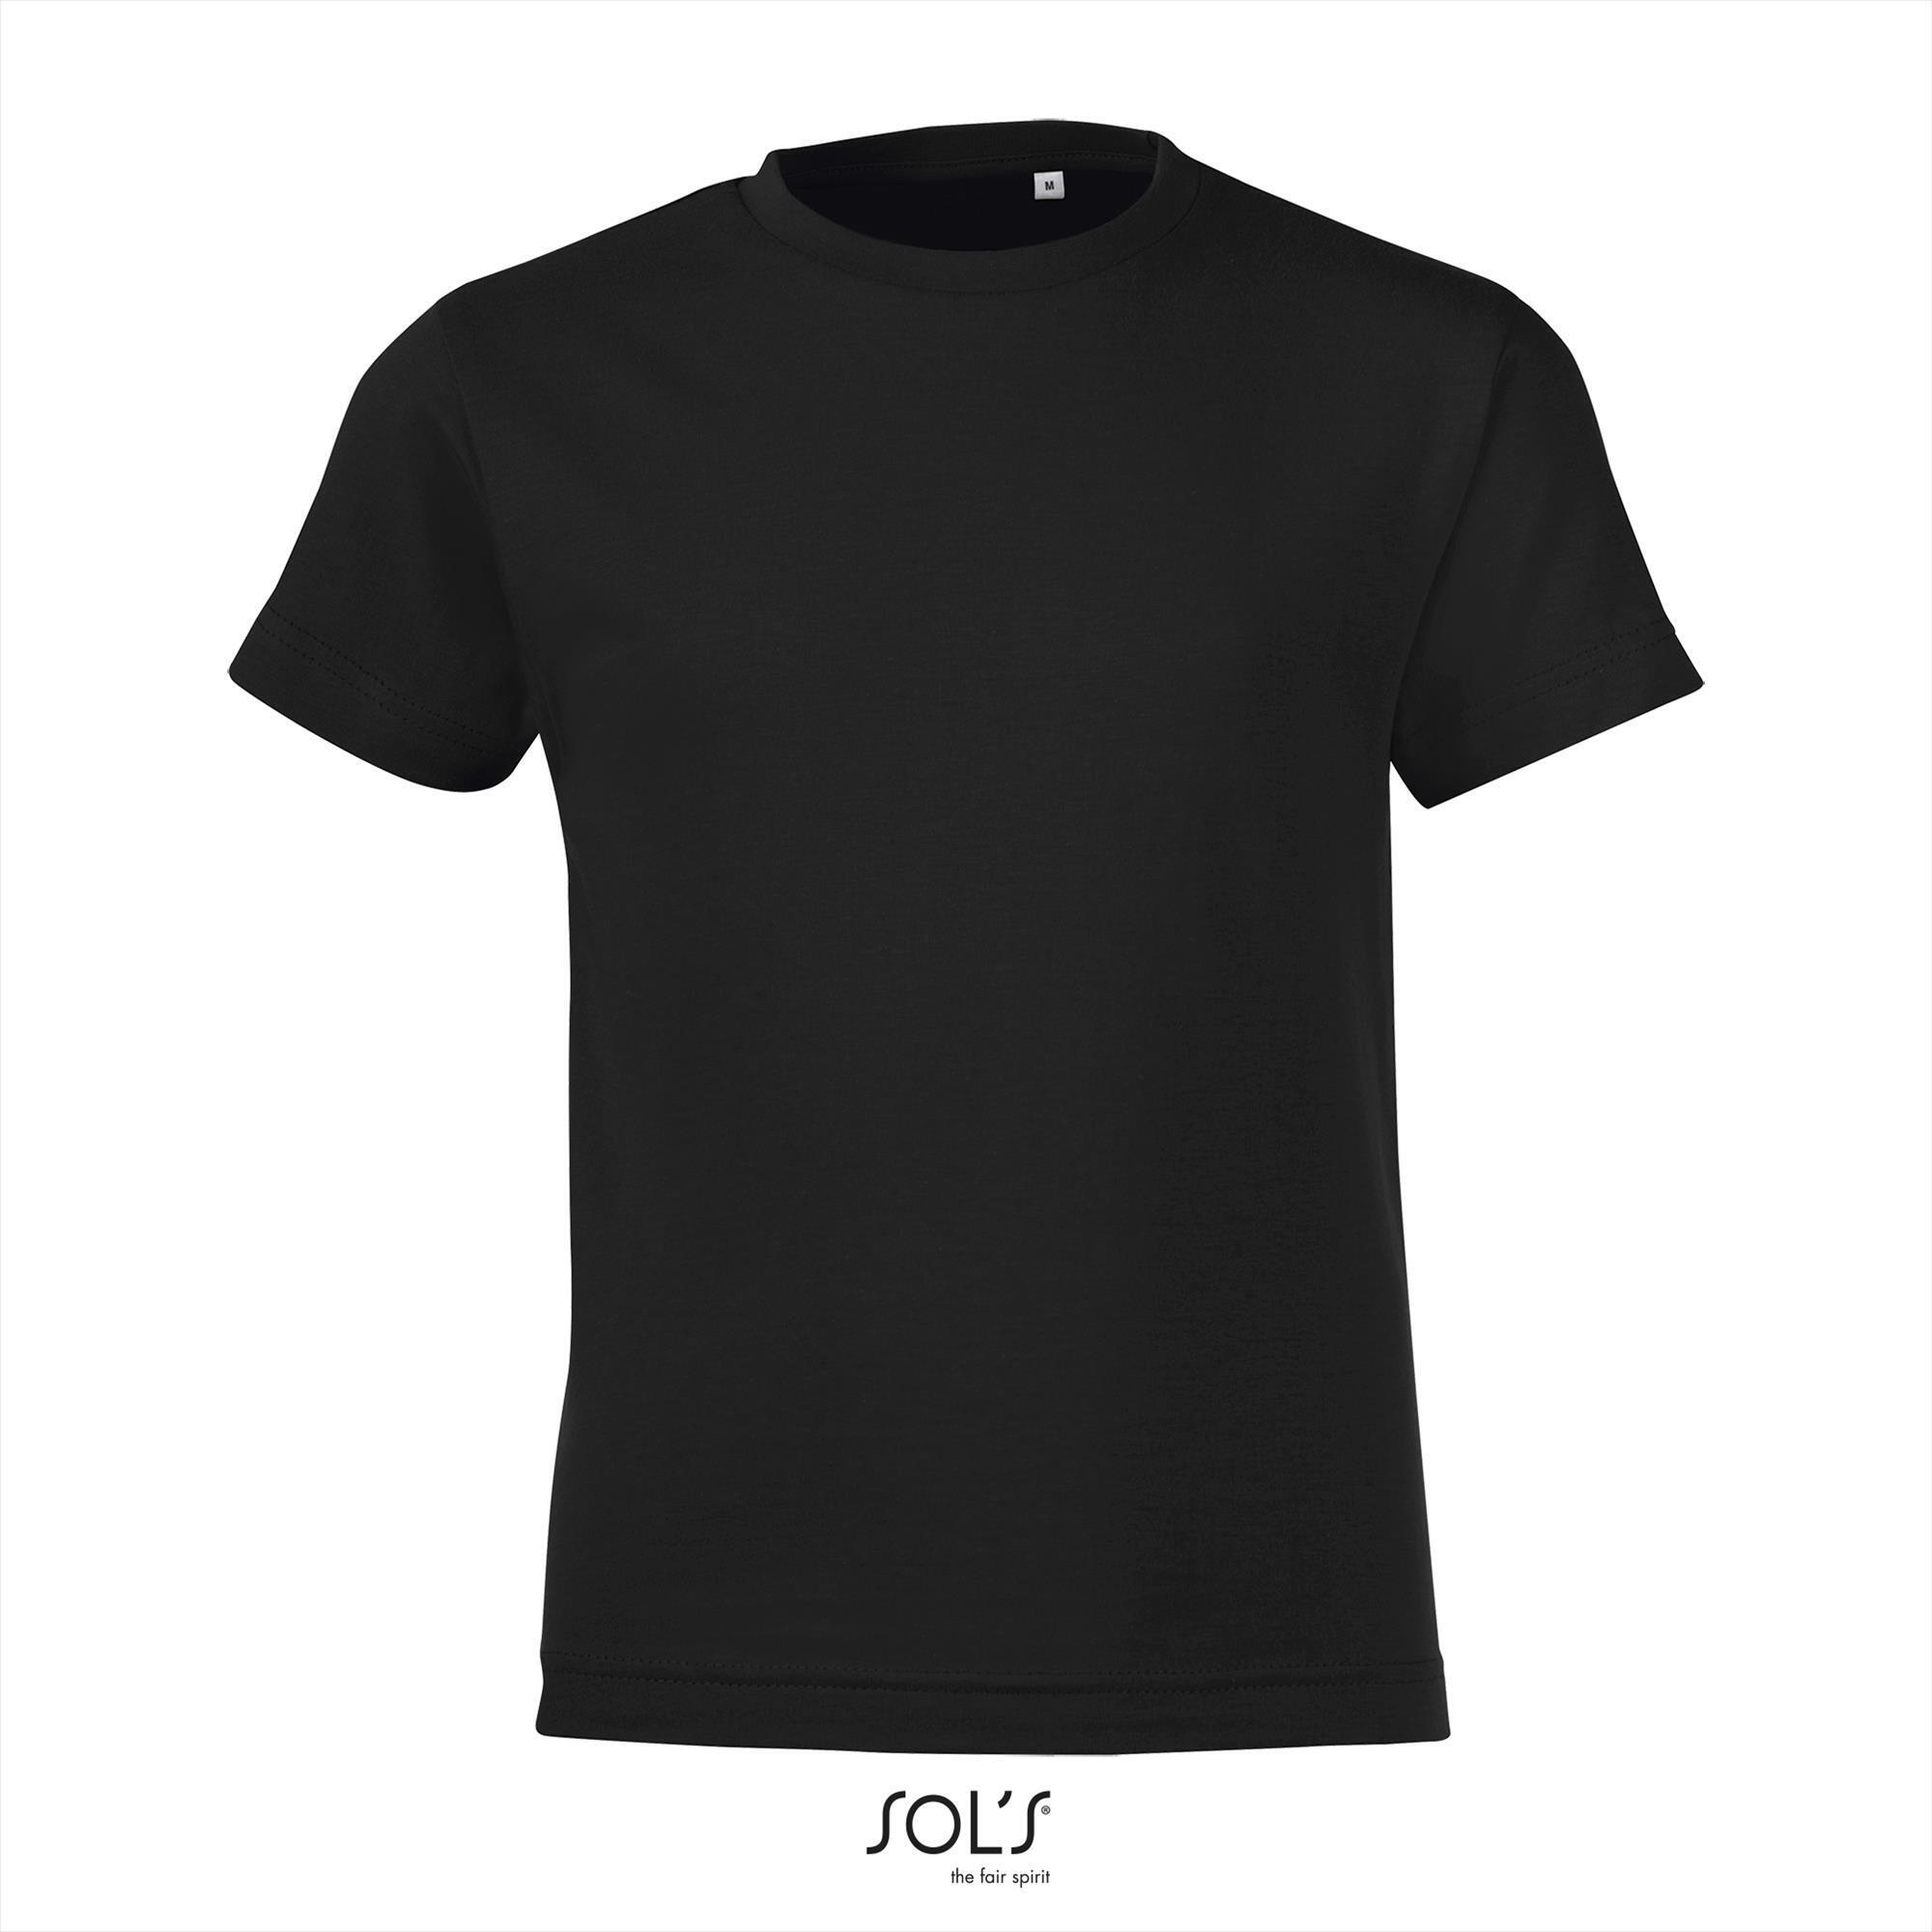 Kinder shirt zwart  Sol's 150 Regent fit